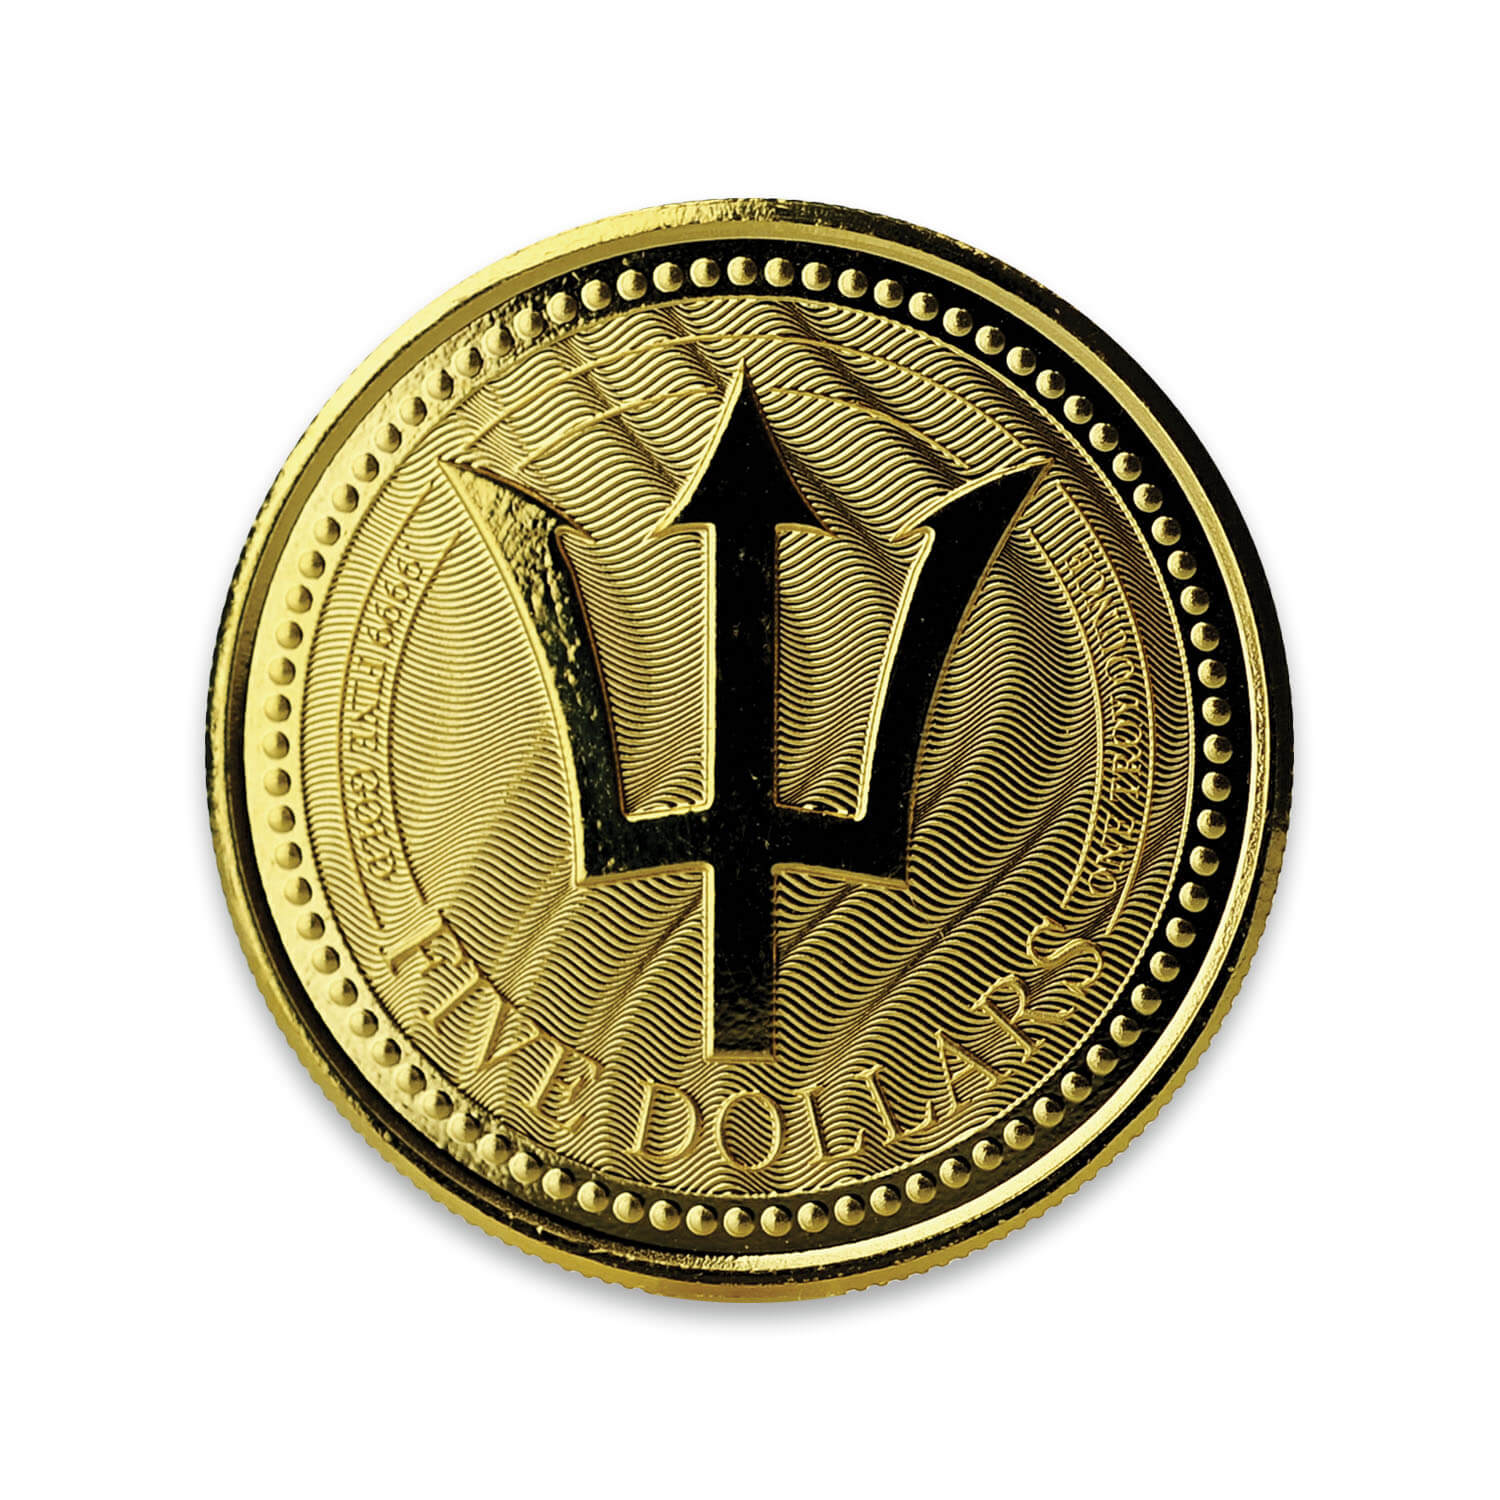 Buy 2017 1 oz Barbados Trident Gold Coin (BU)